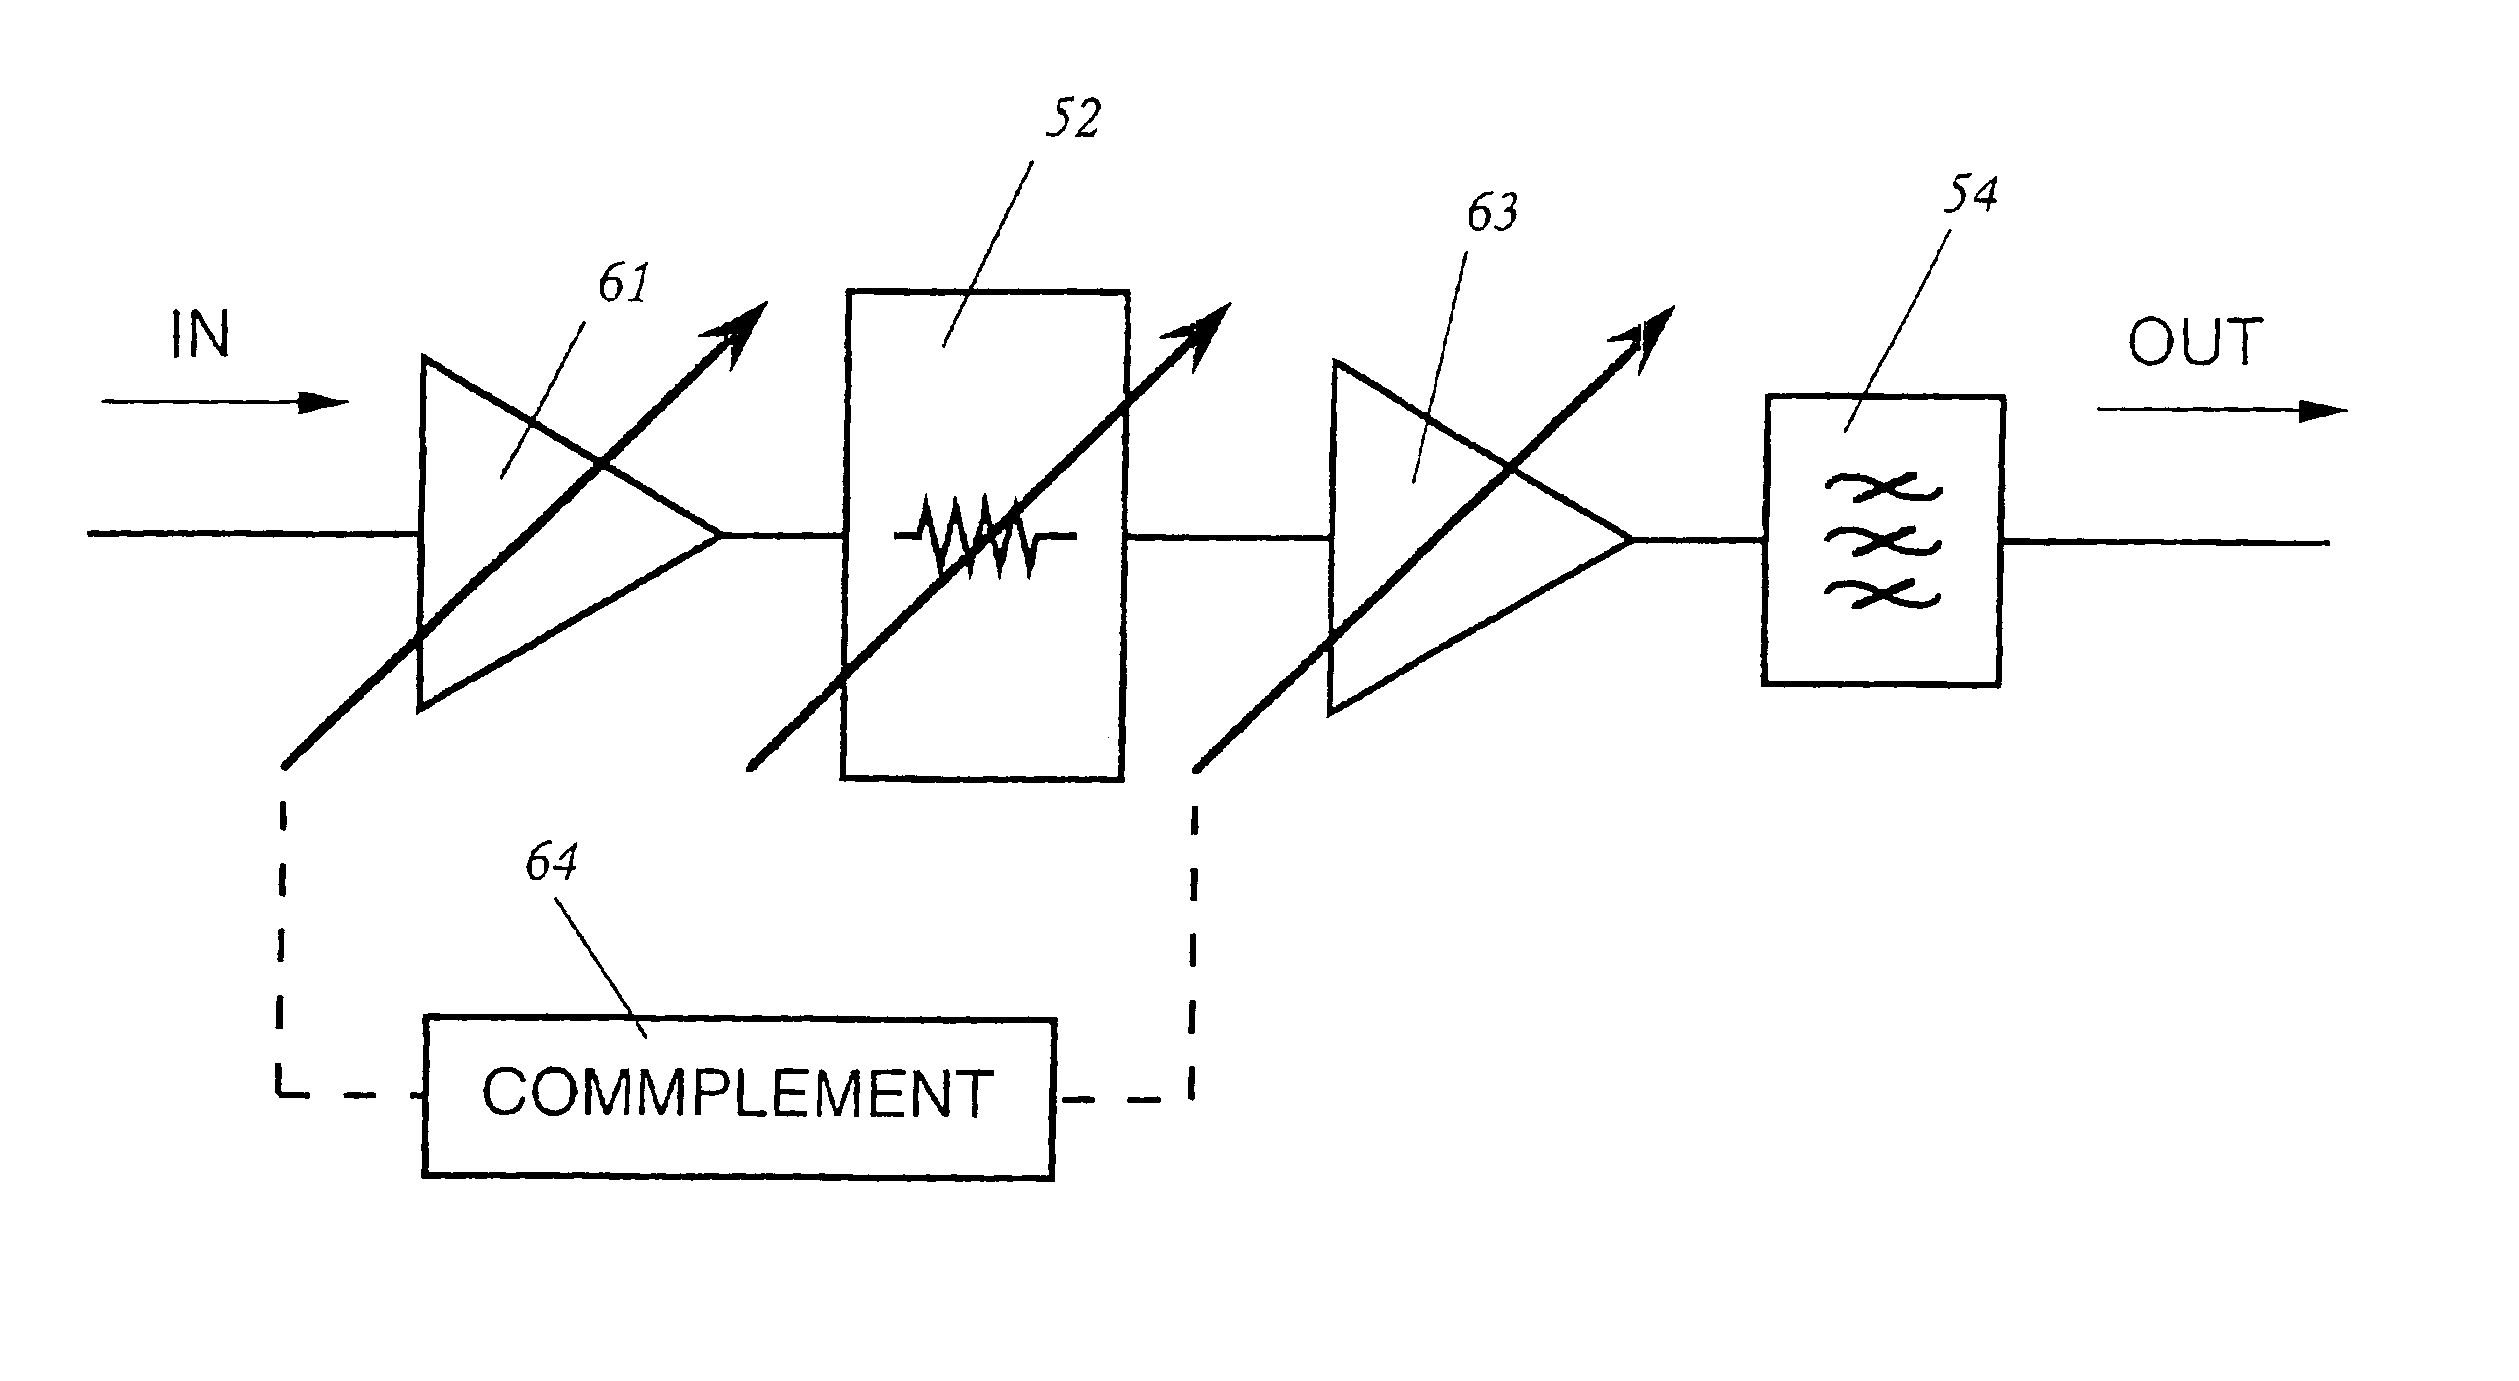 Optical amplifier modules